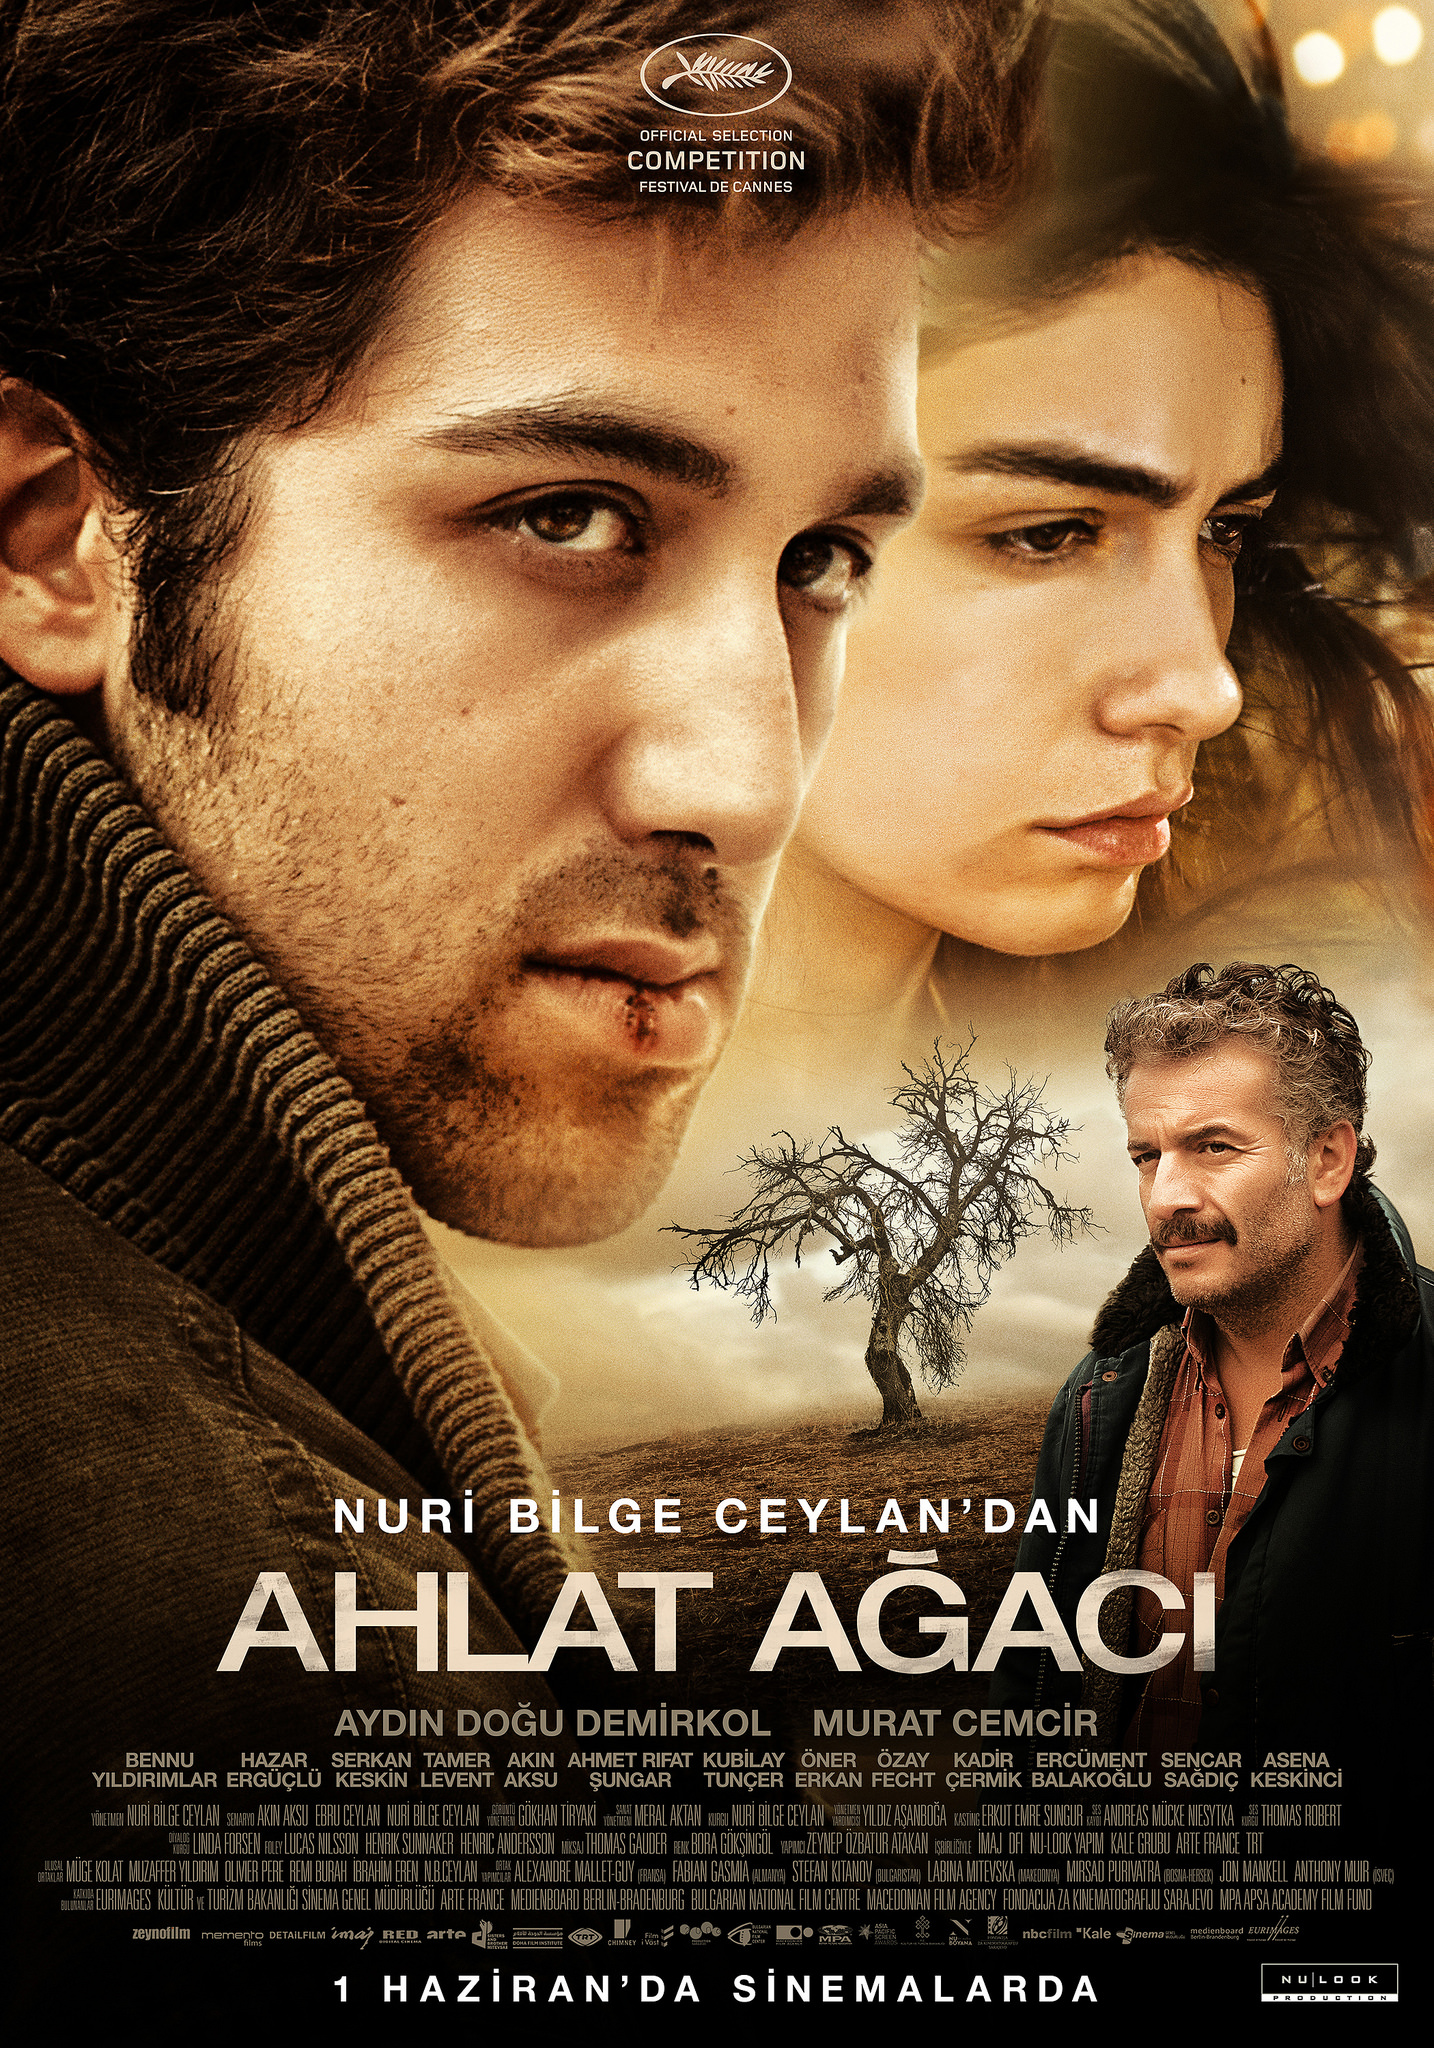 Ahlat Ağacı, Yönetmen: Nuri Bilge Ceylan, 2018